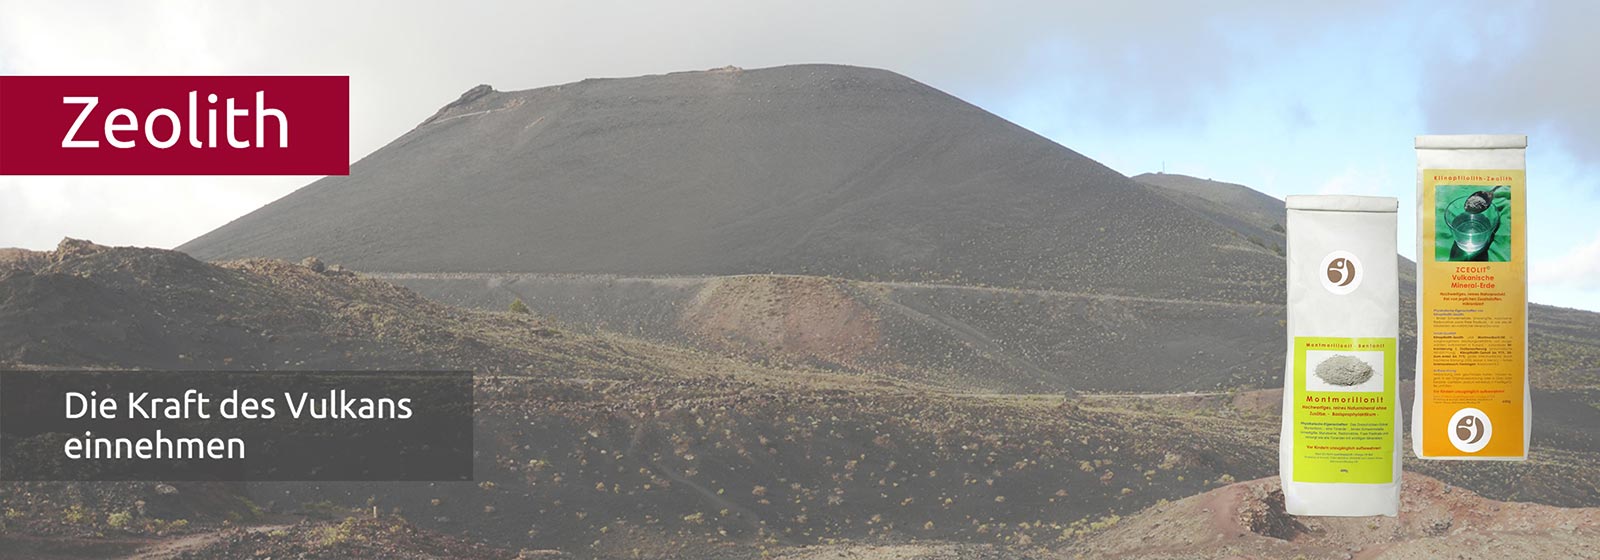 Karge Vulkanlandschaft mit brauner Lava